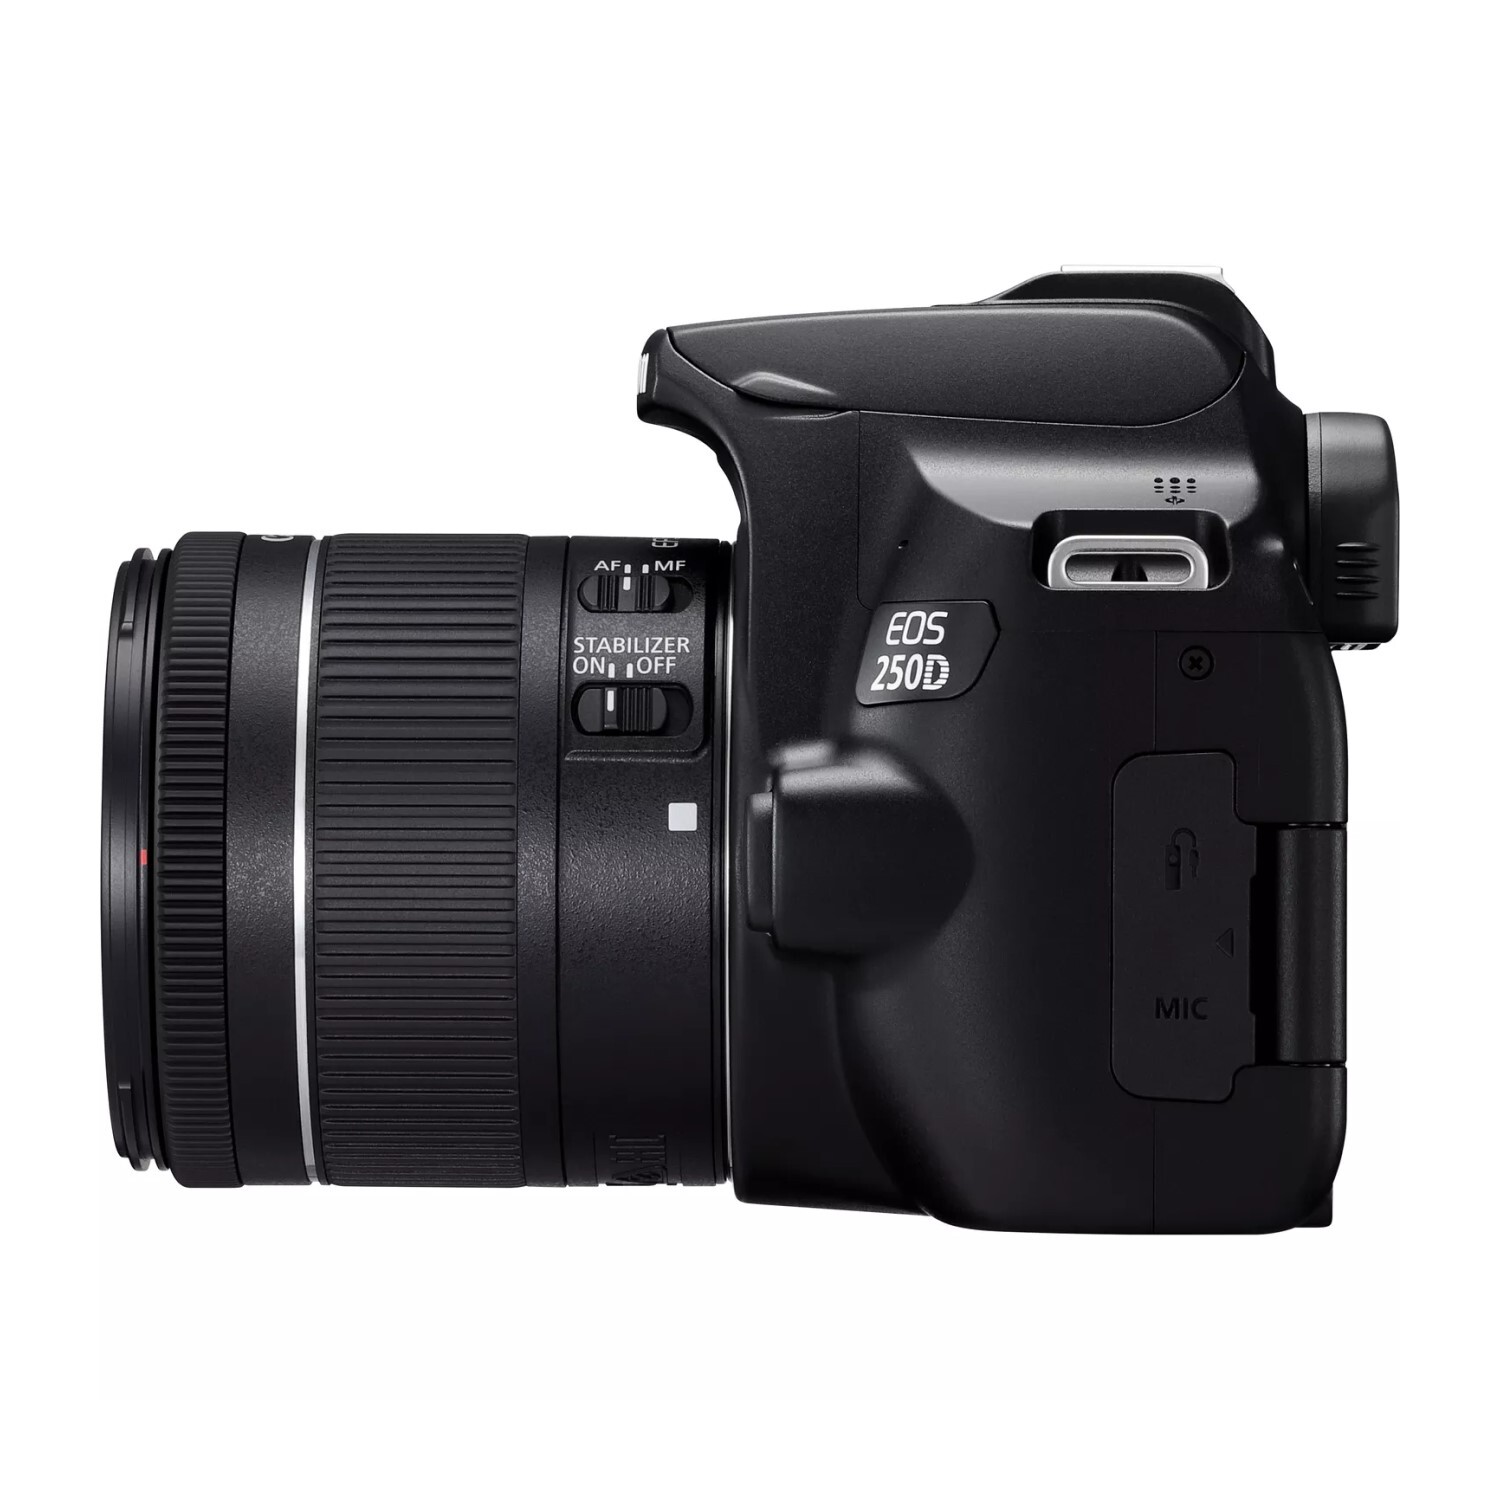 Bolsa protectora negra para cámara reflex Canon